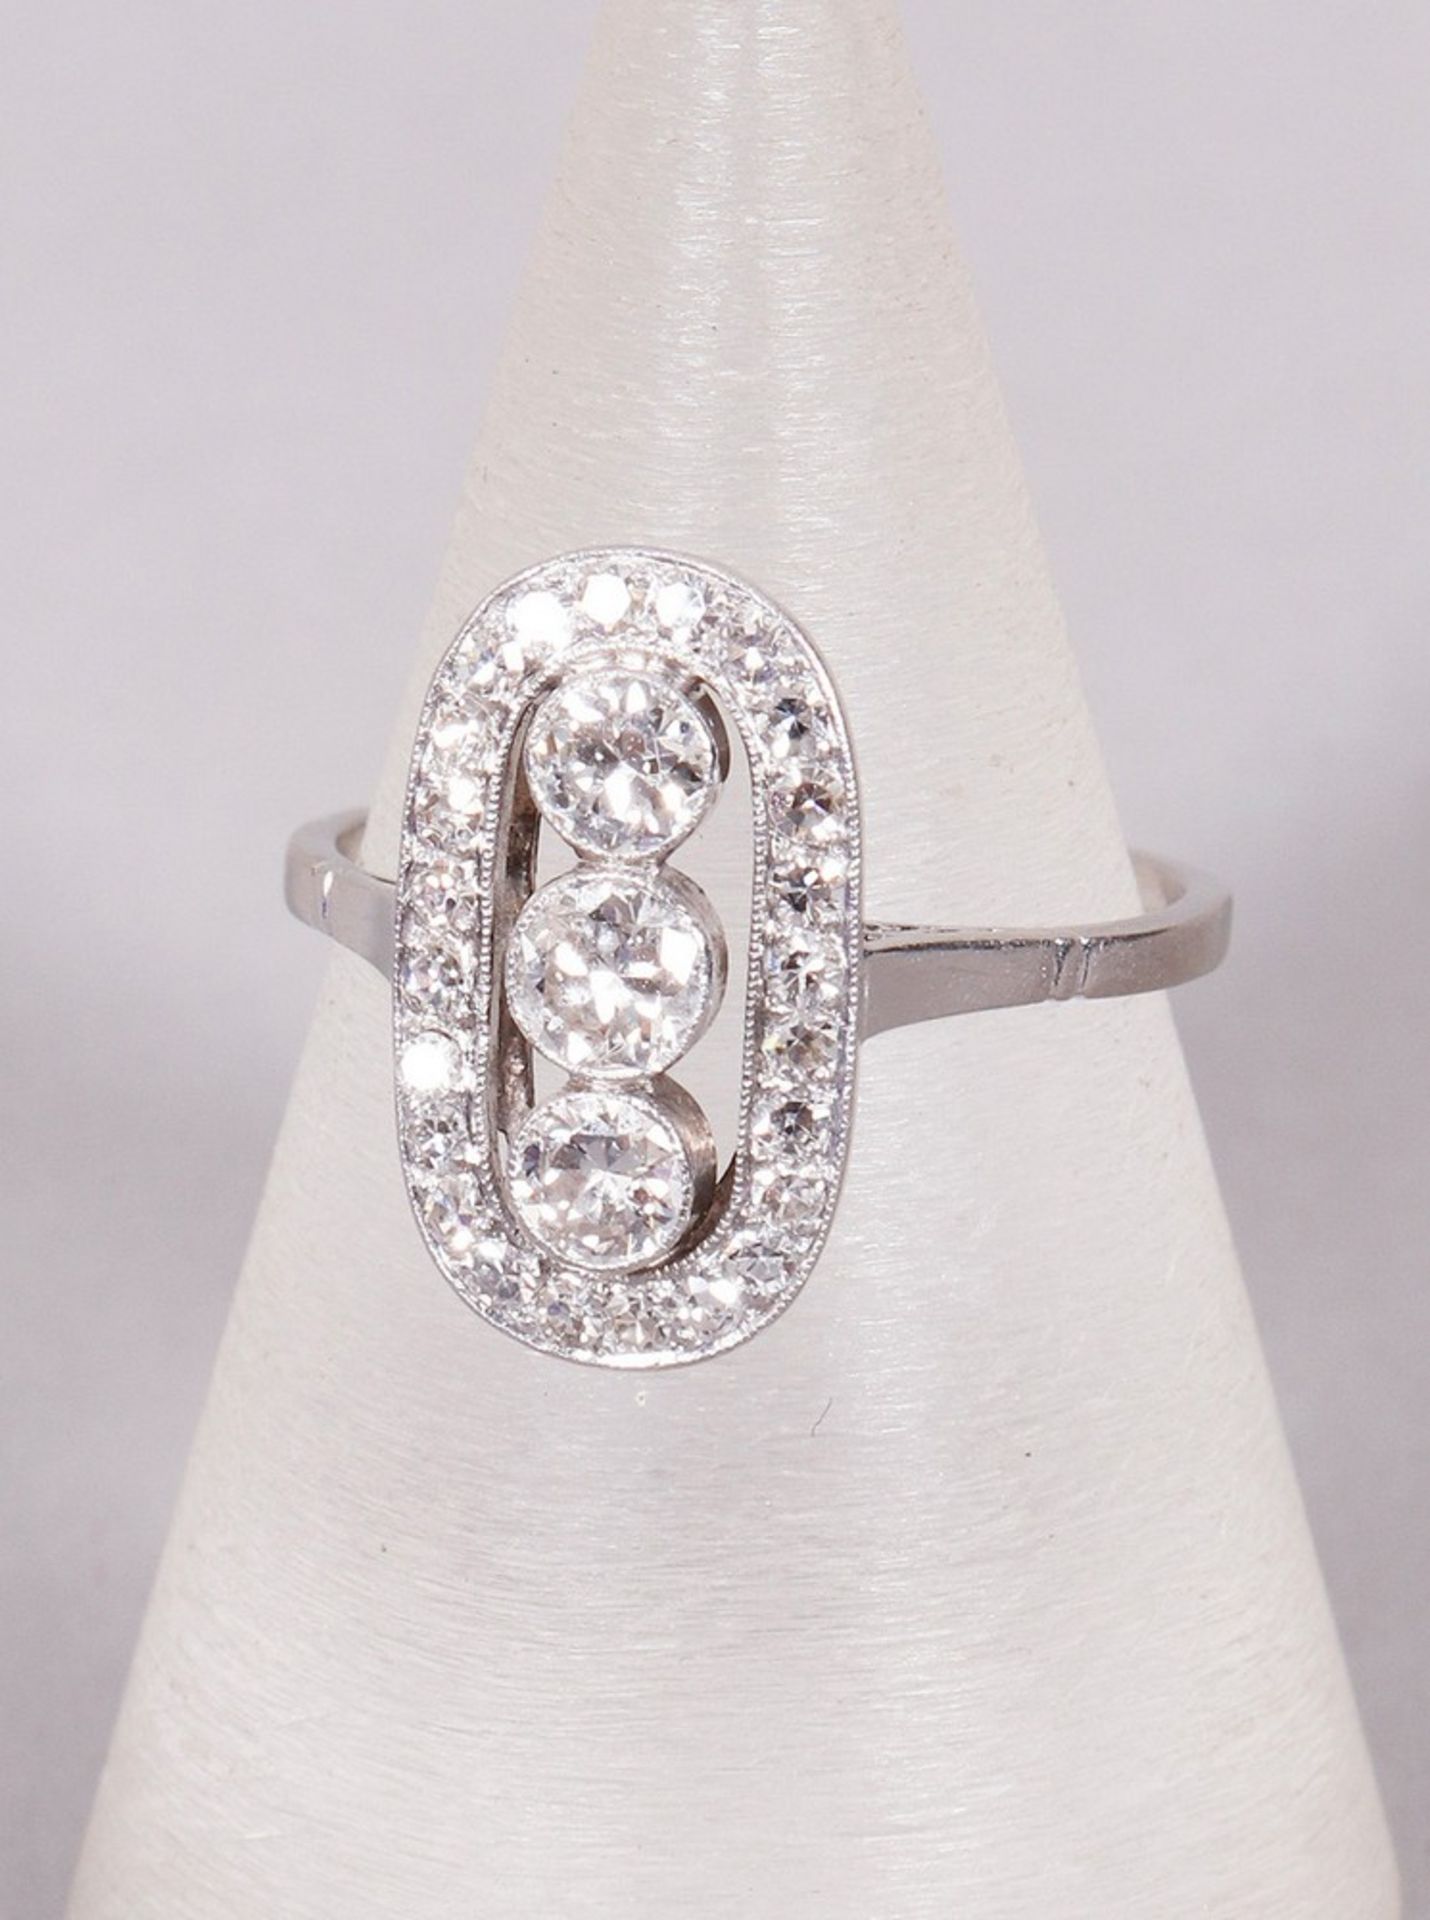 Art Deco ring, 900 platinum and diamonds, 1920s/30s